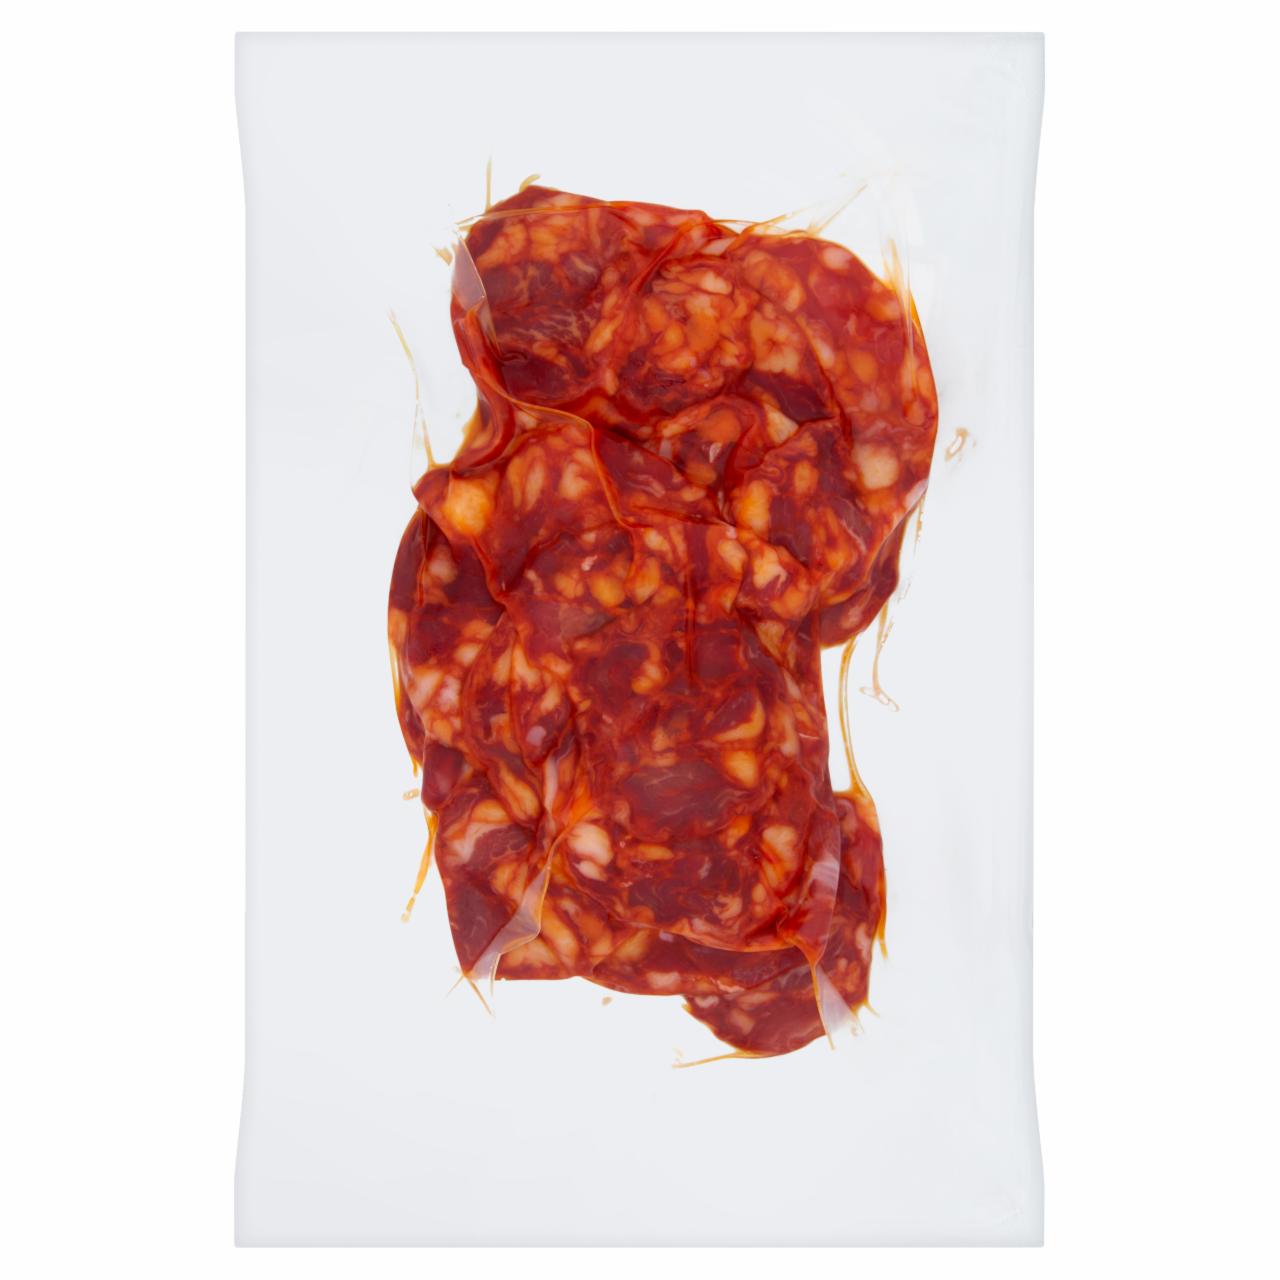 Képek - Chorizo paprikás vastagkolbász szeletek 100 g